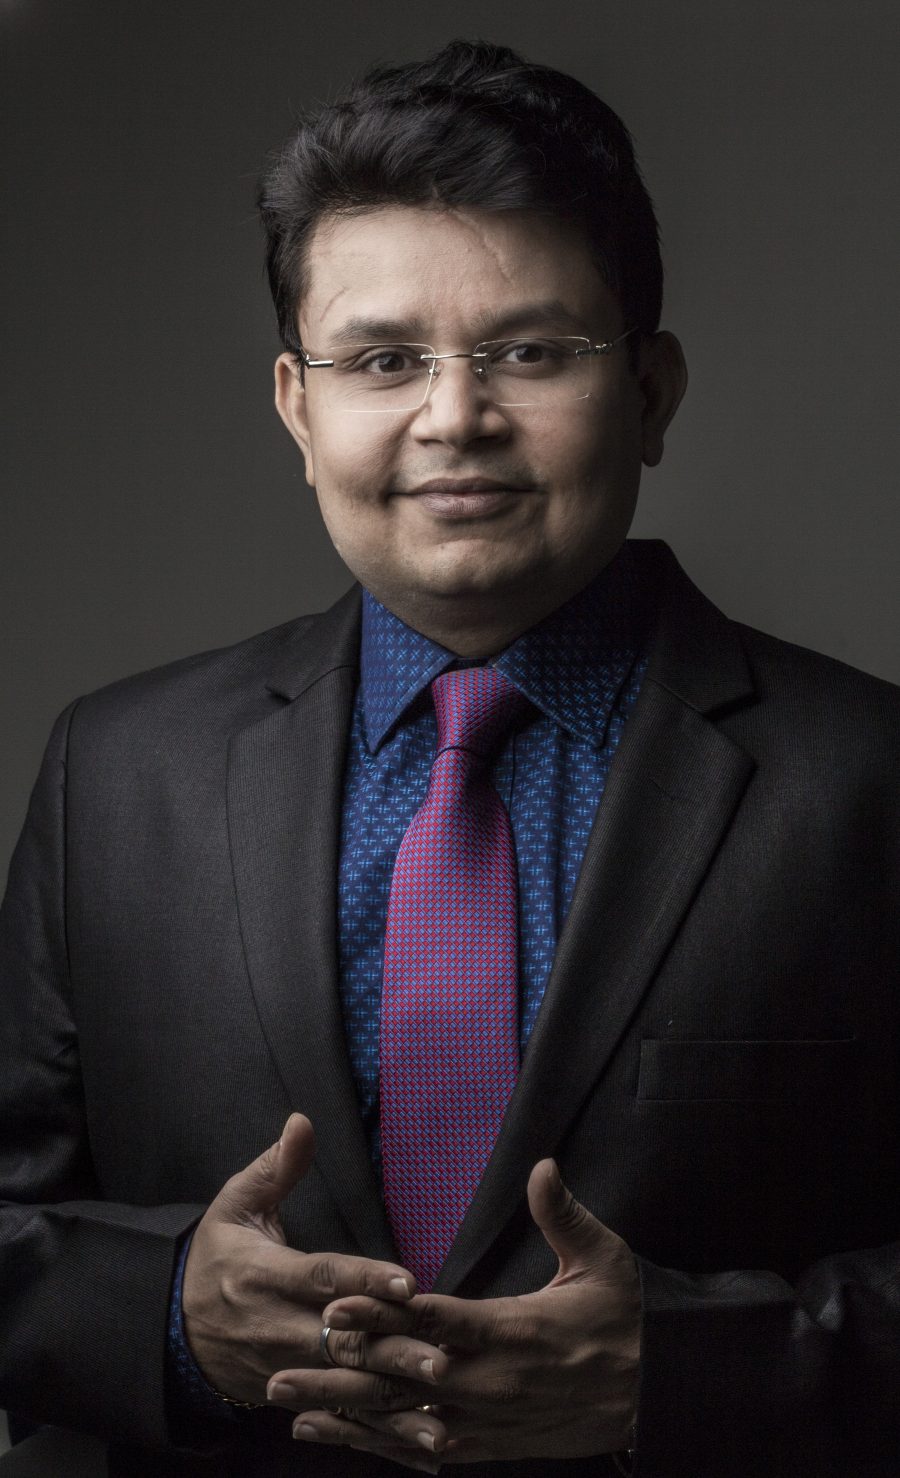 Dr.Ashish Shah